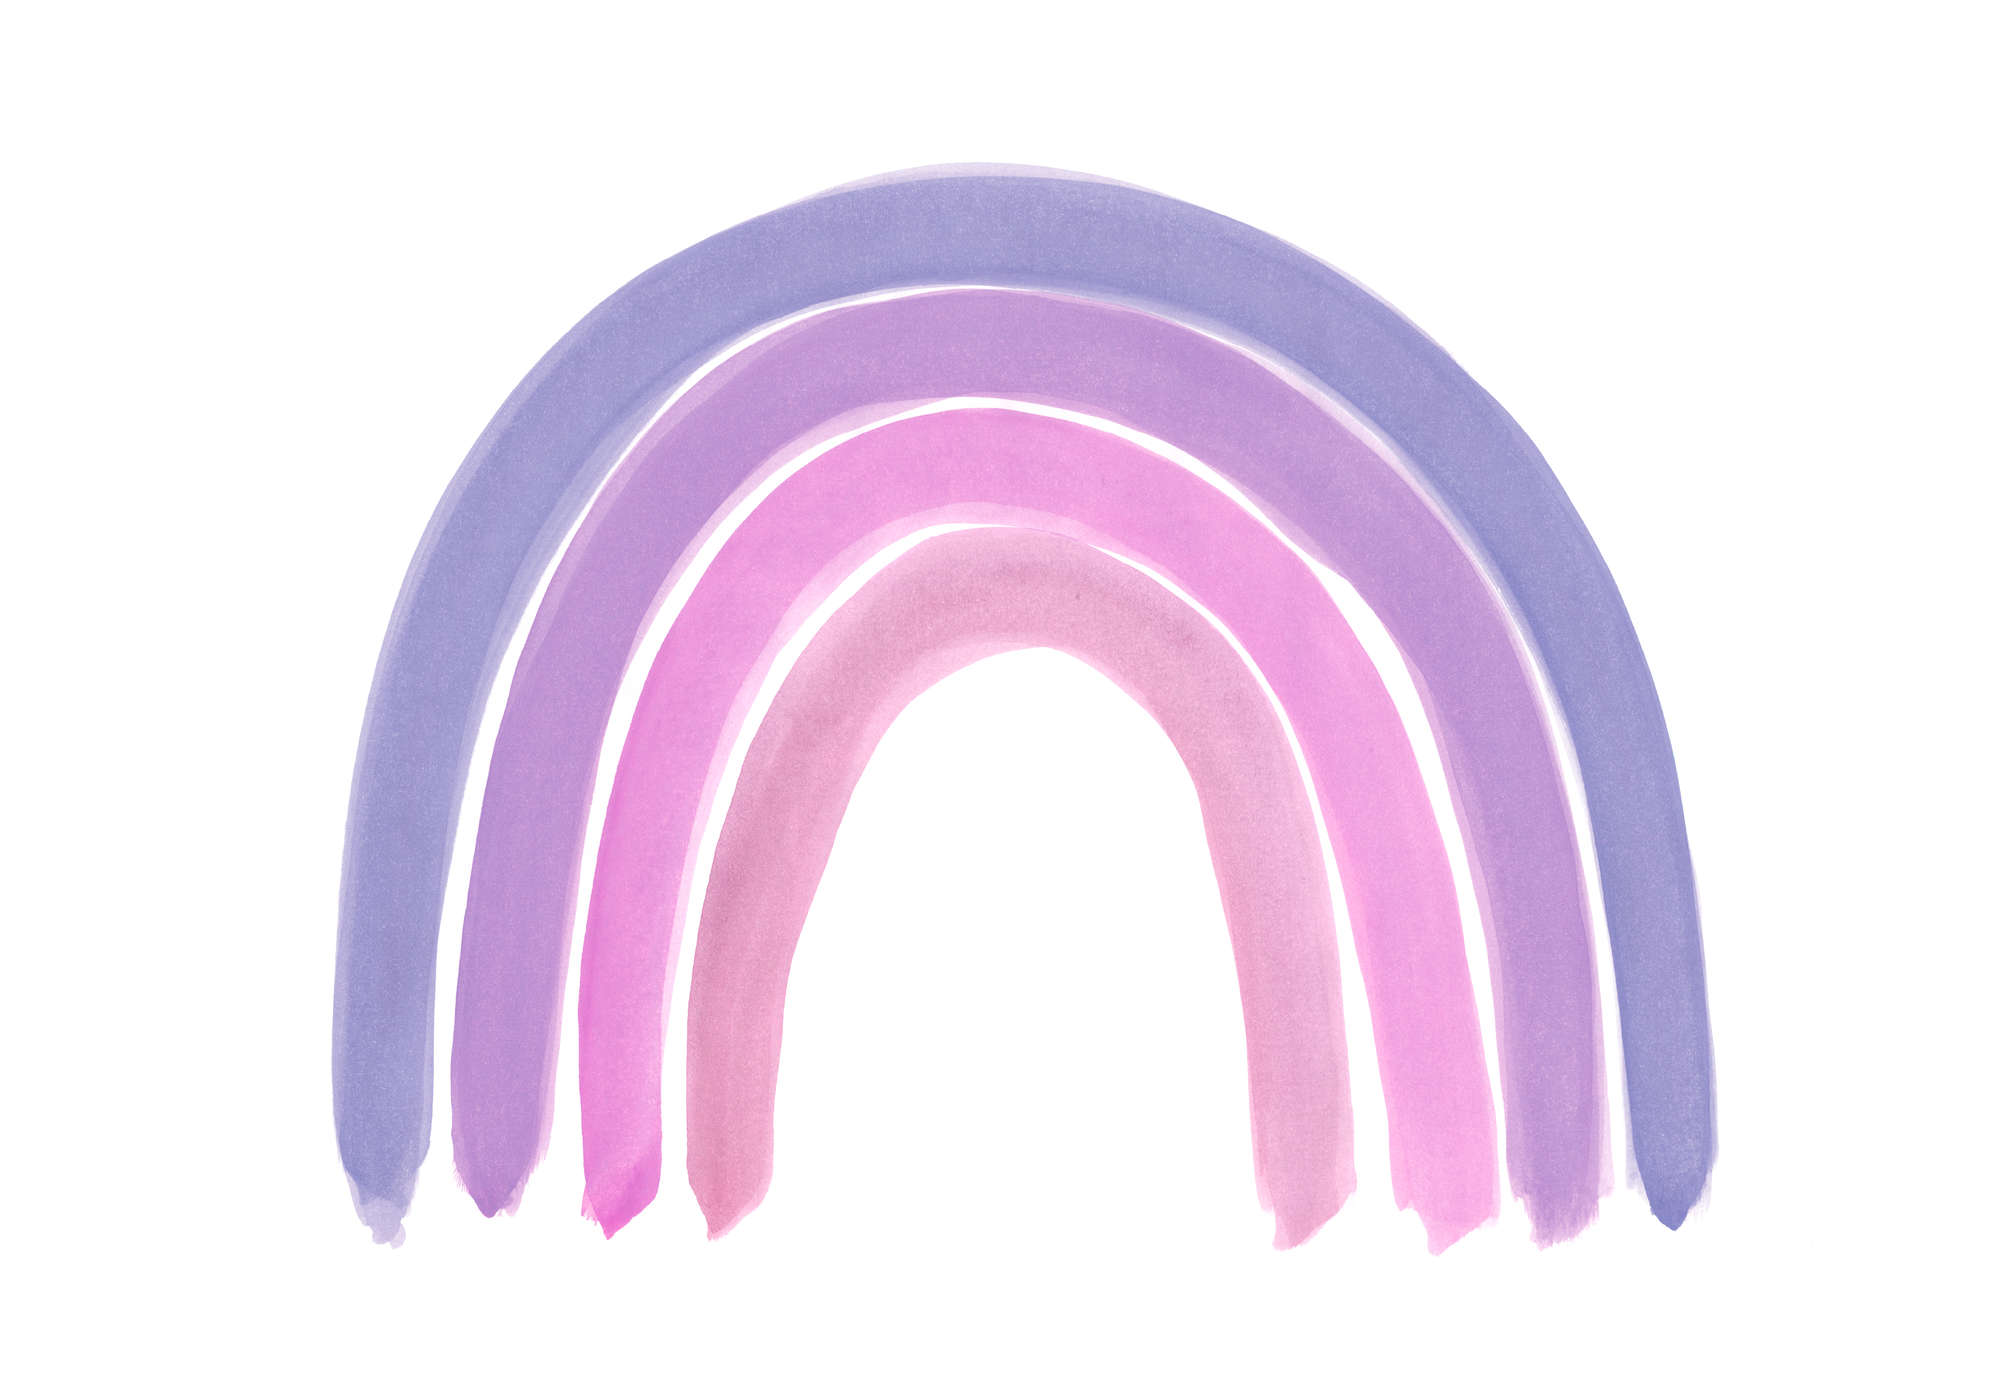             Muurschildering meisjeskamer regenboog in paars
        